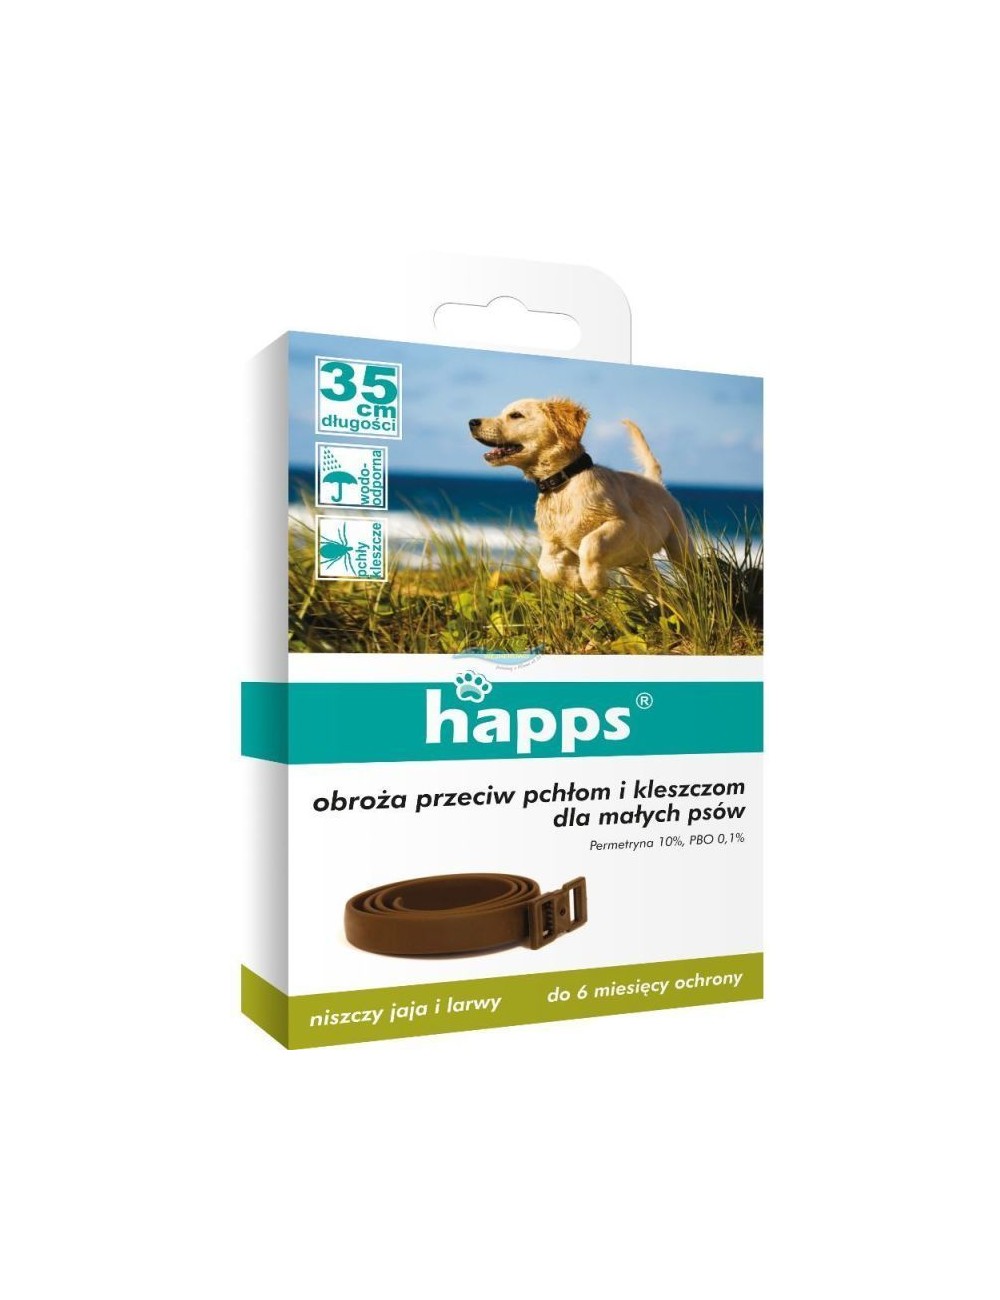 Happs Obroża Przeciw Pchłom i Kleszczom dla Małych Psów 1 szt – 35 cm długości, działa do 180 dni